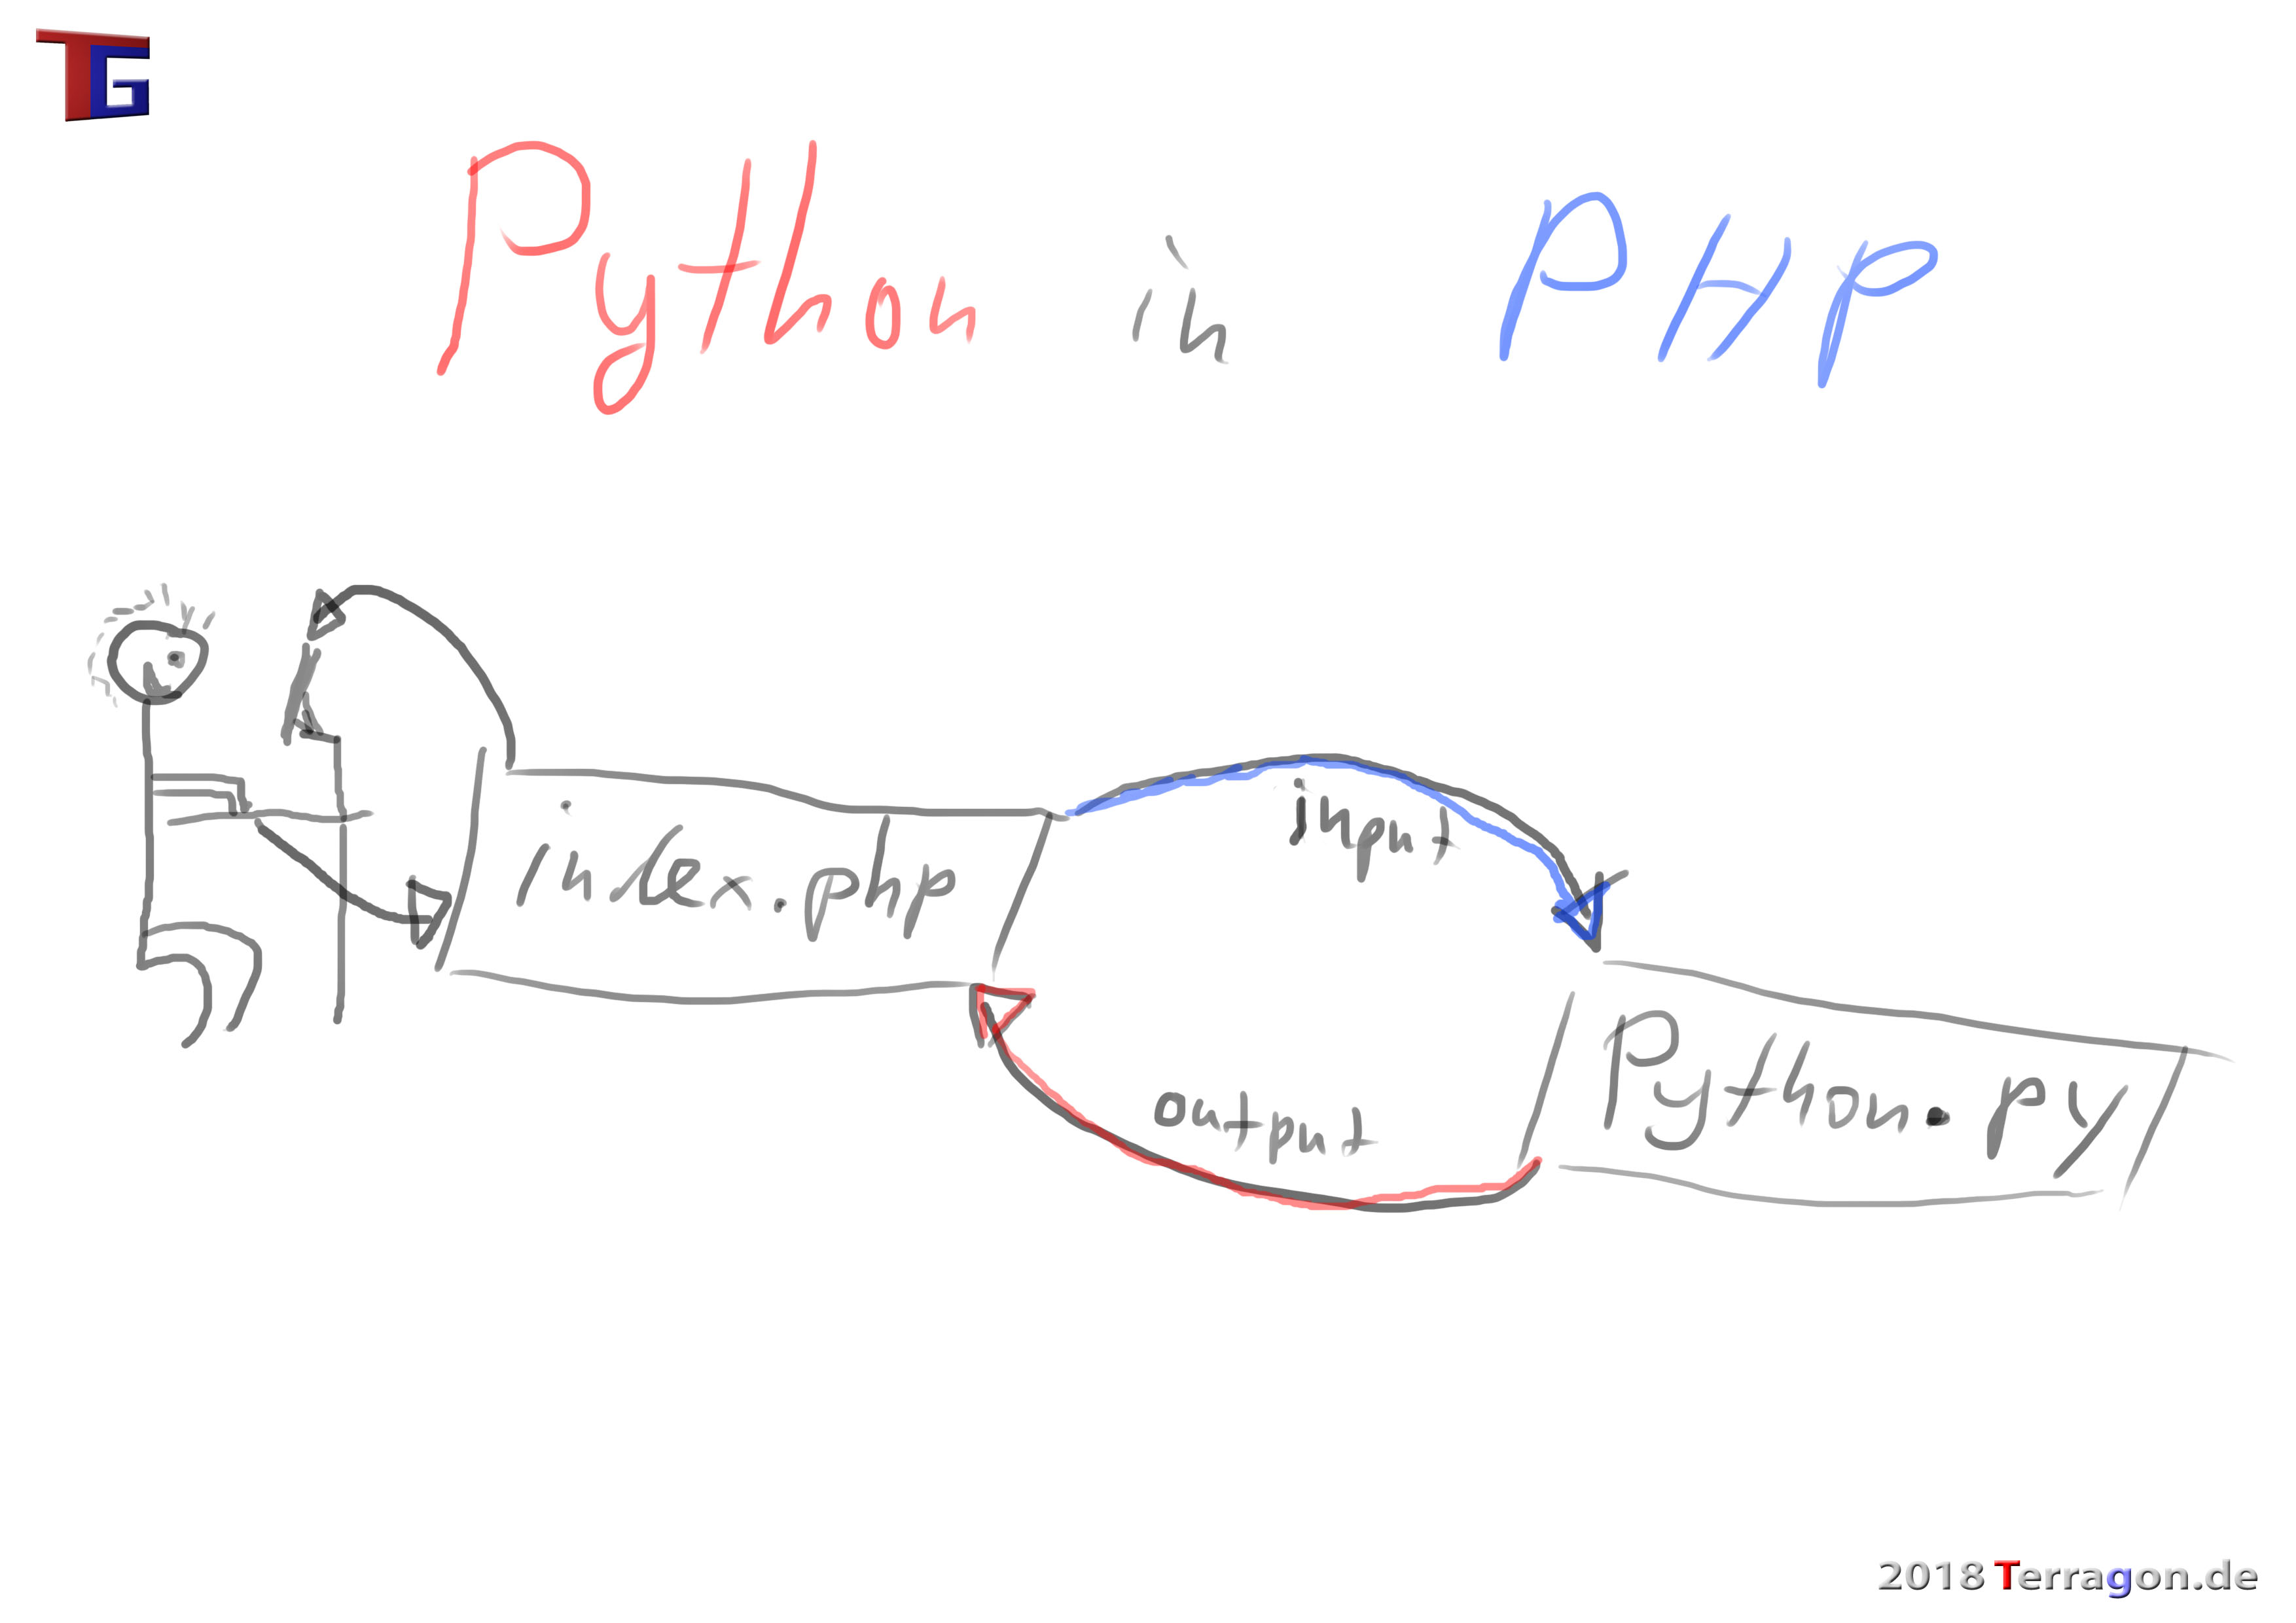 Python Scripte in PHP ausführen und Variablen übergeben